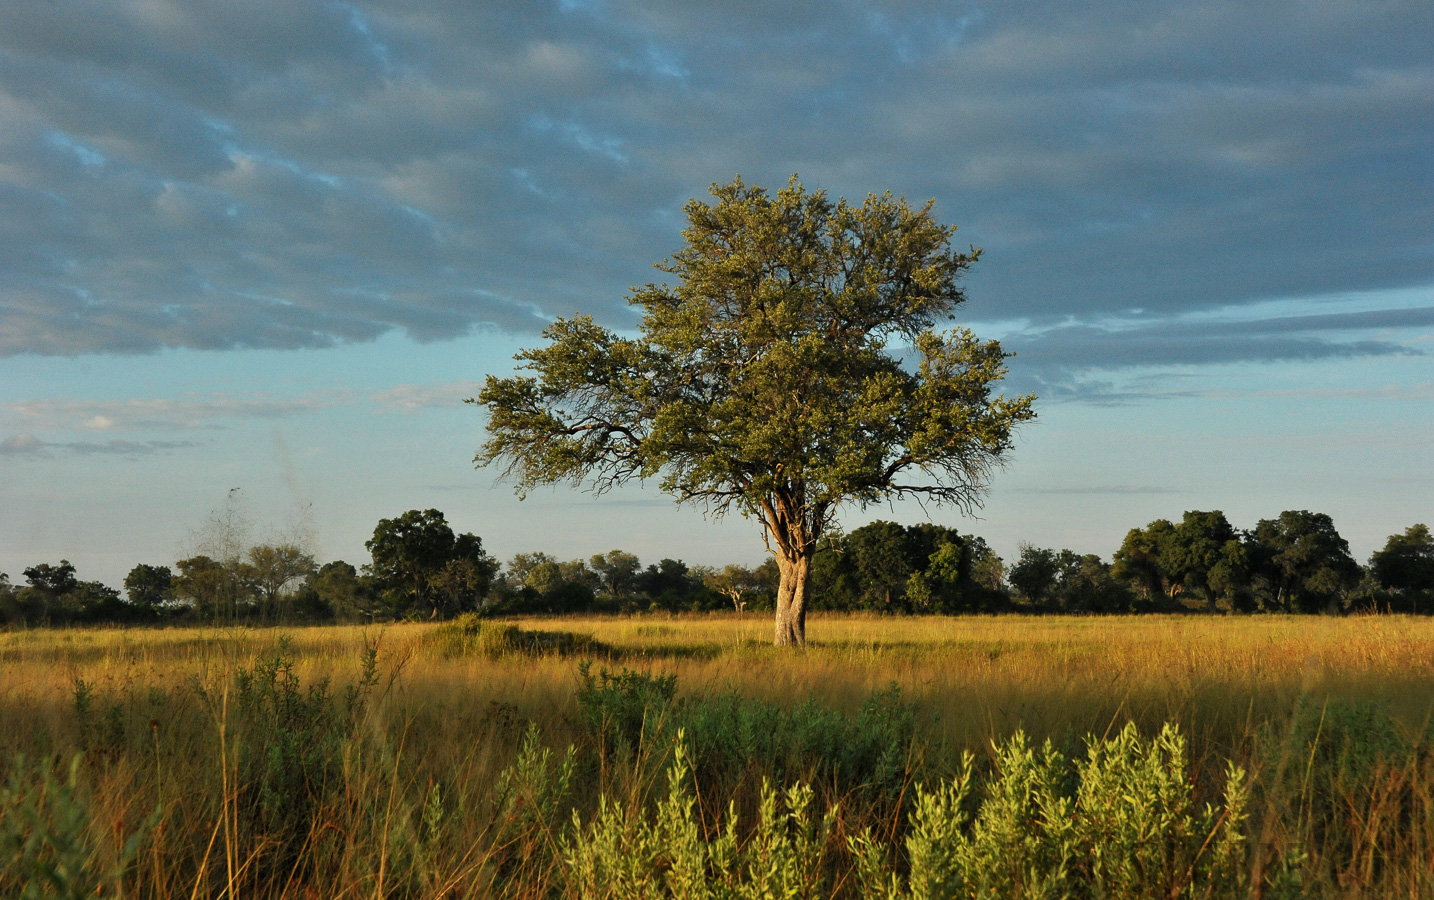 Okavango Delta [56 mm, 1/2500 sec at f / 8.0, ISO 2500]